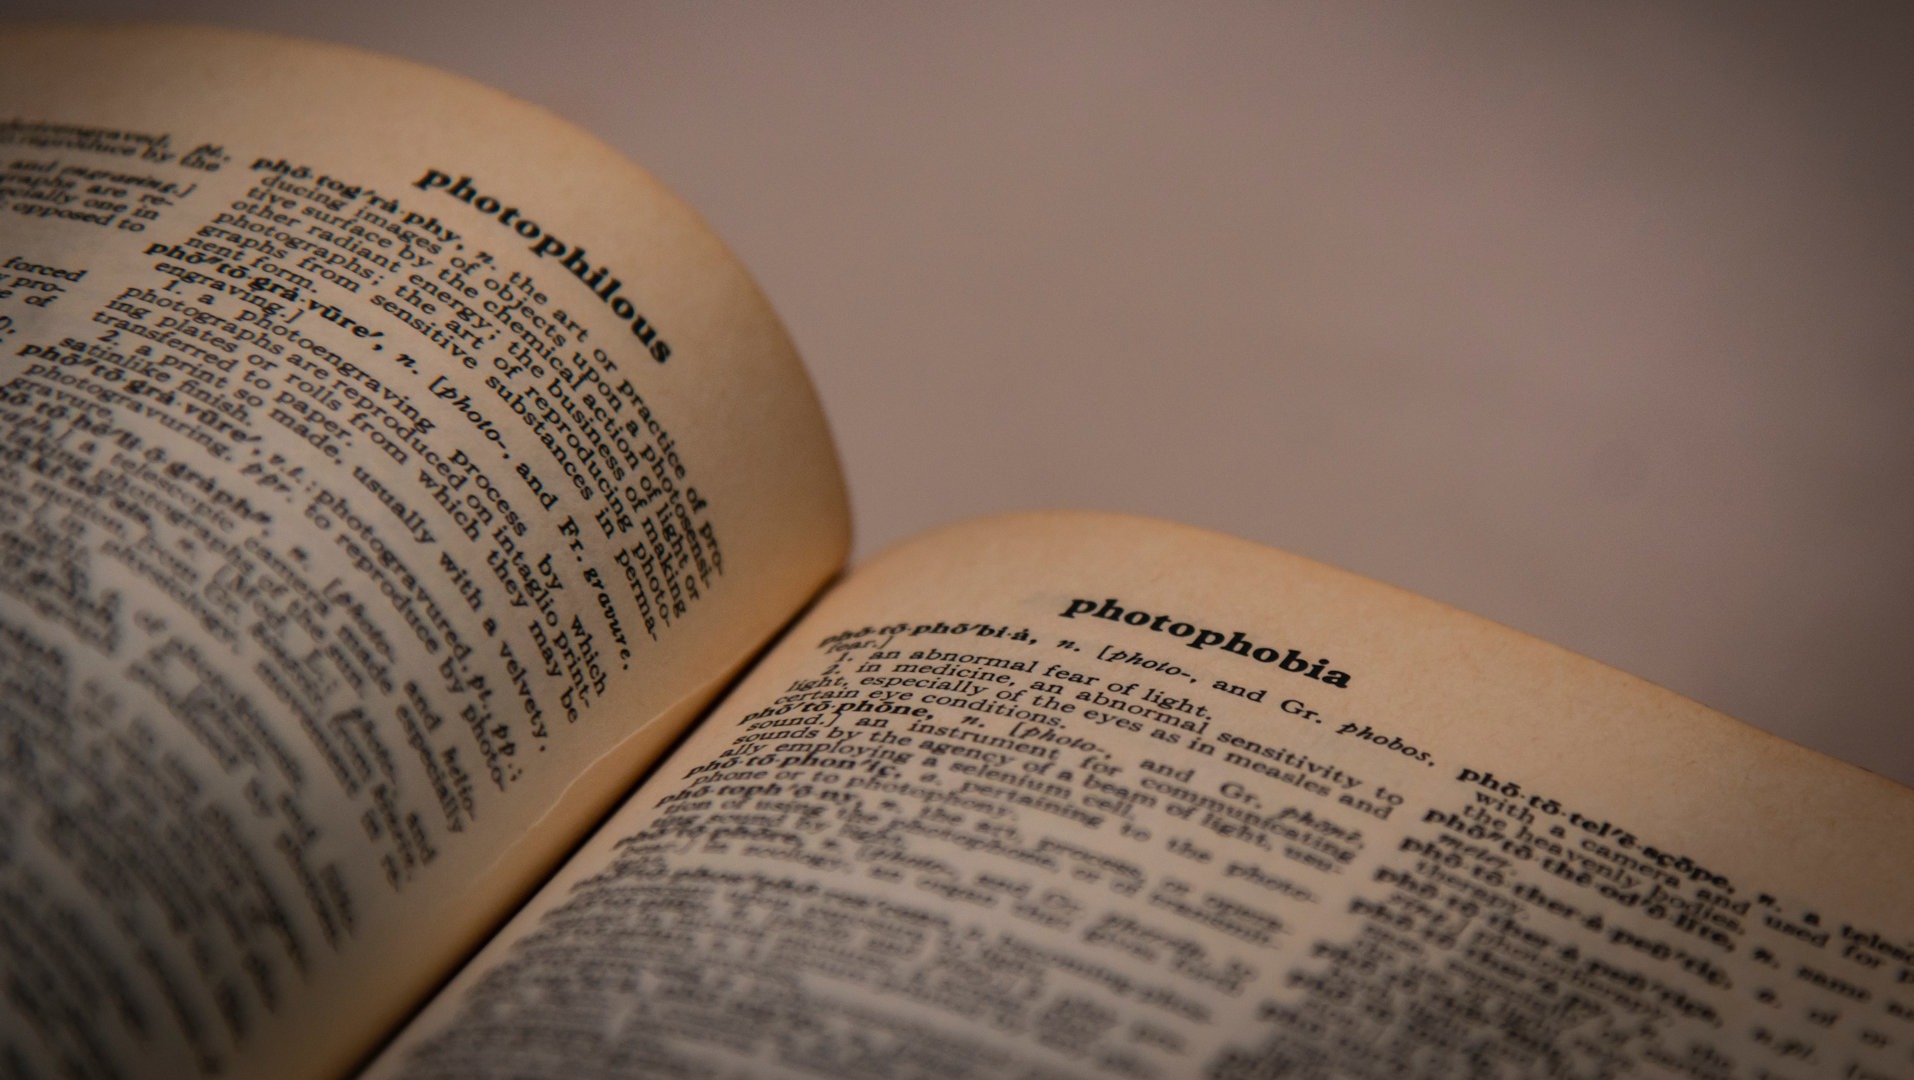 Un dictionnaire anglais est ouvert aux pages « photophilous » et « photophobia ».